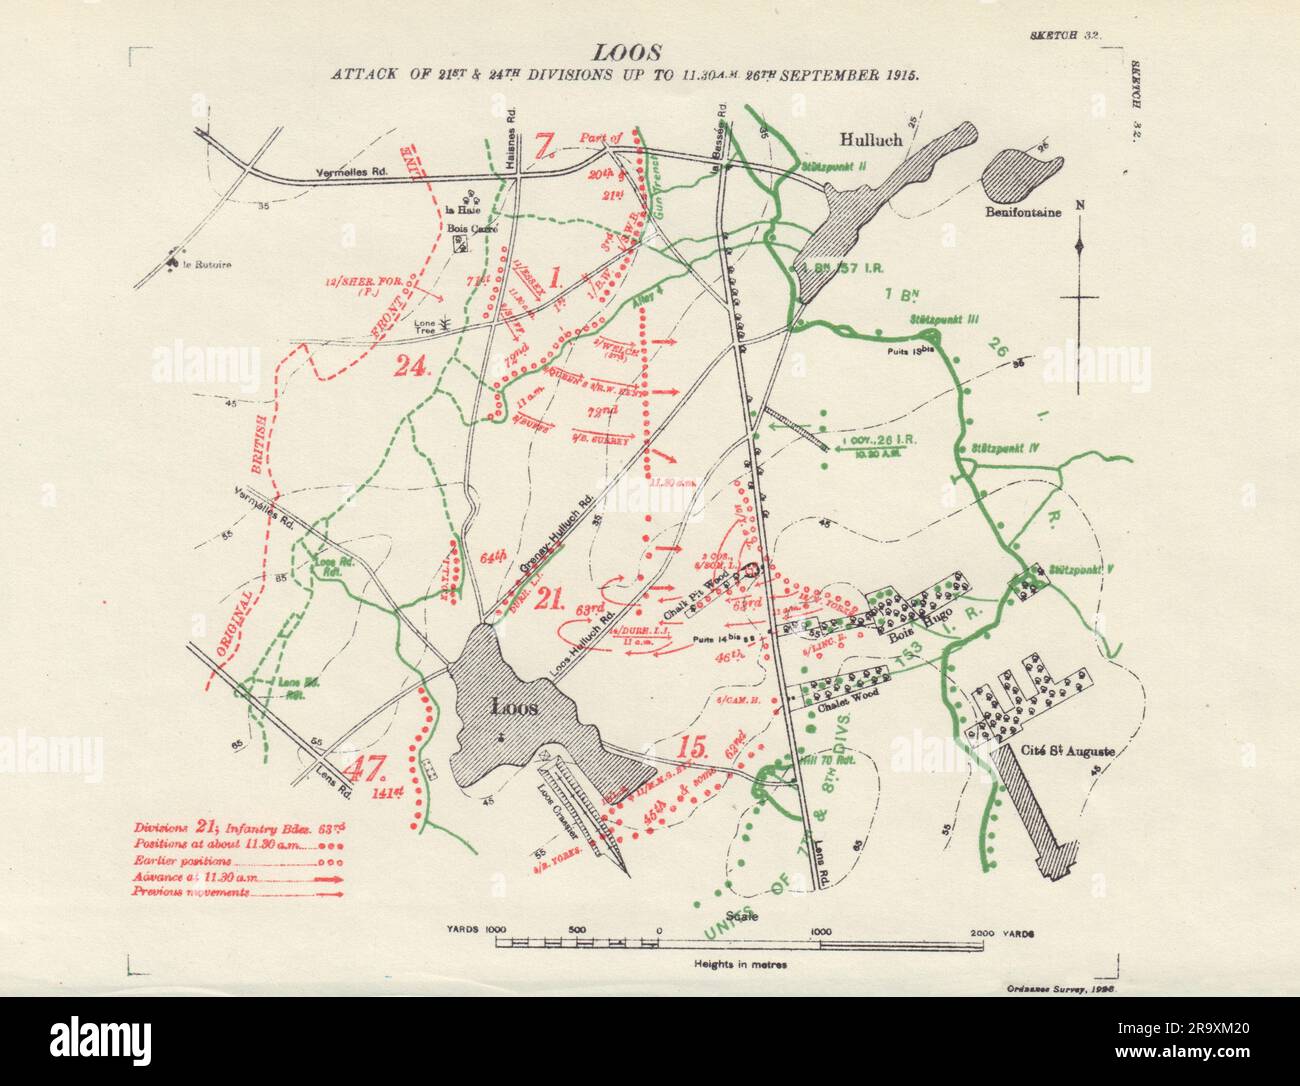 Battle of Loos 21/24 Divisions greift bis zum 11:30am 26. September 1915 an. Gräben 1928 Karte Stockfoto